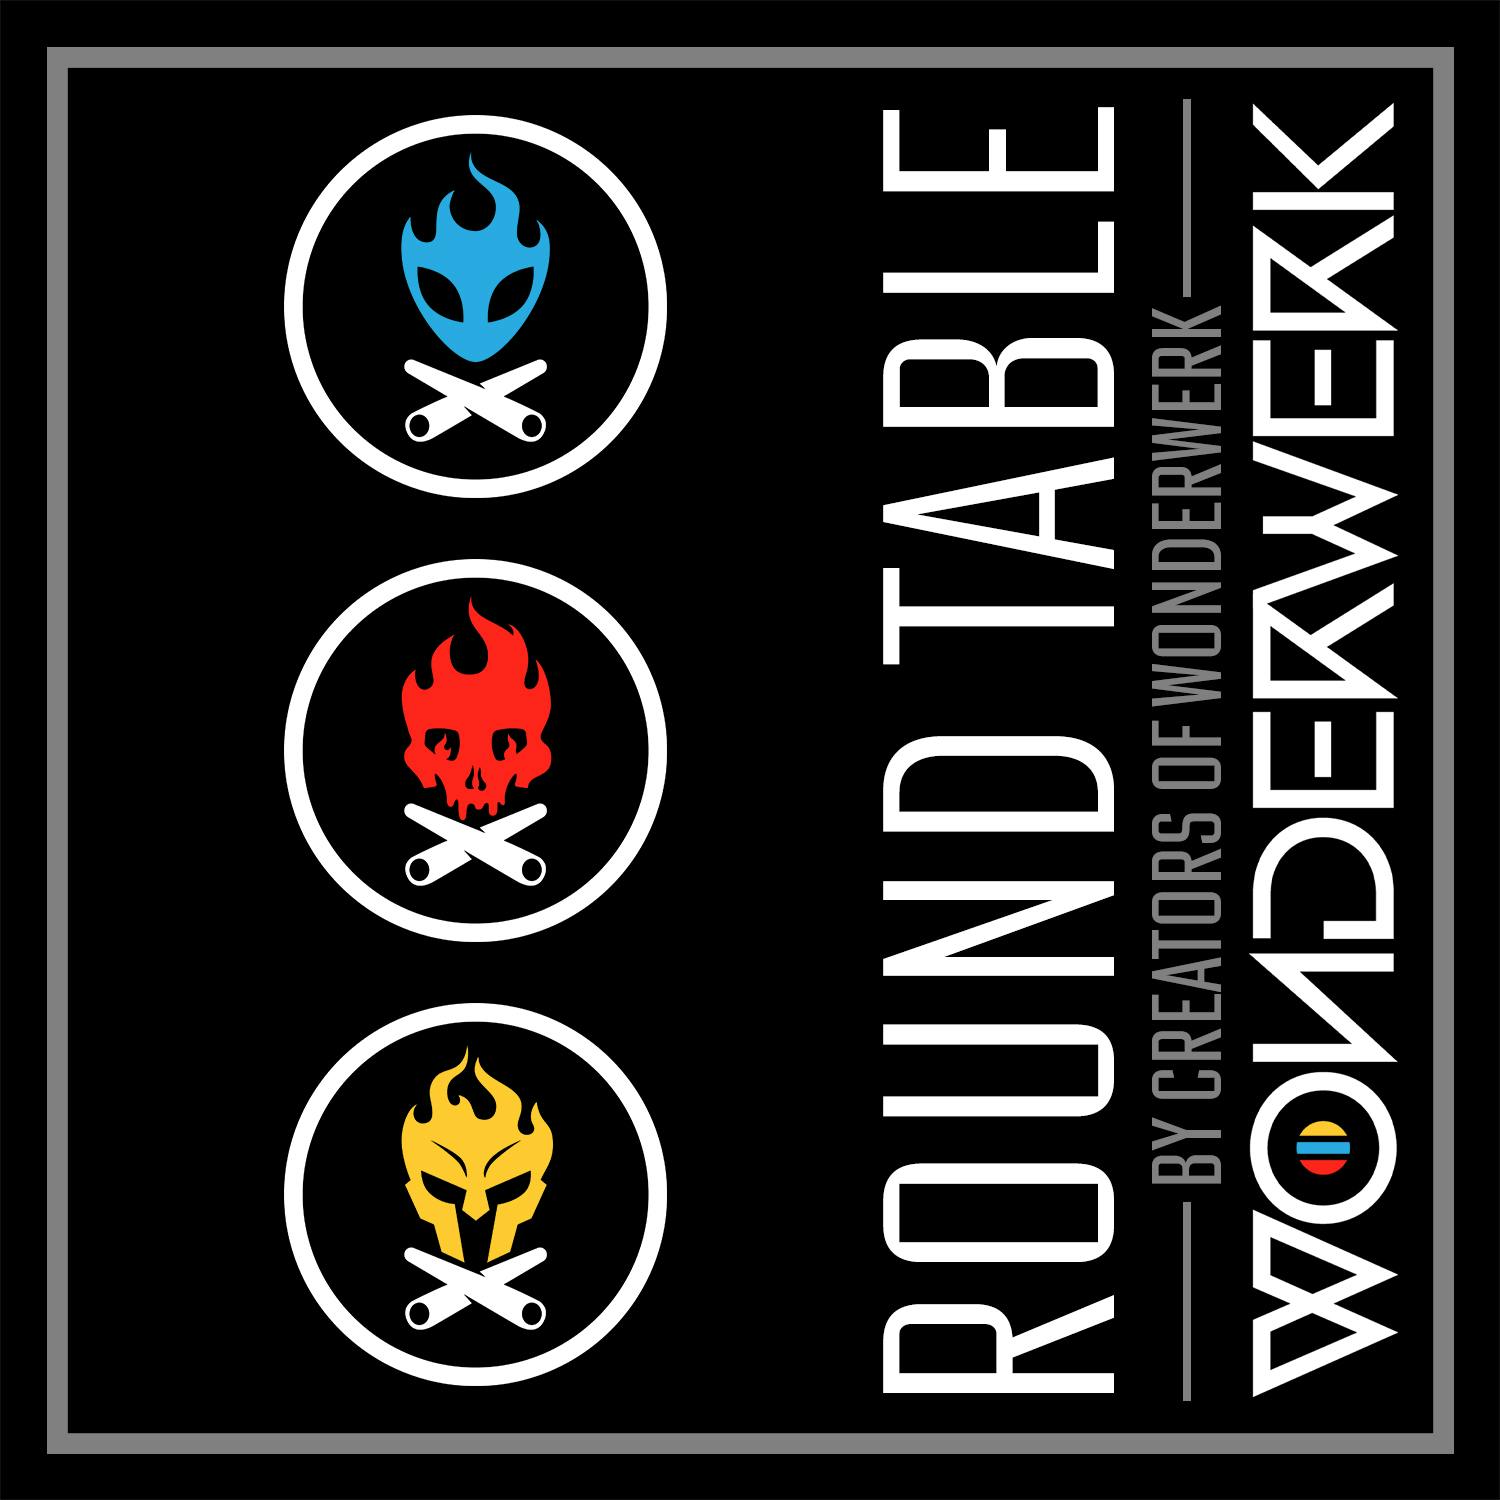 The WonderWerk Round Table